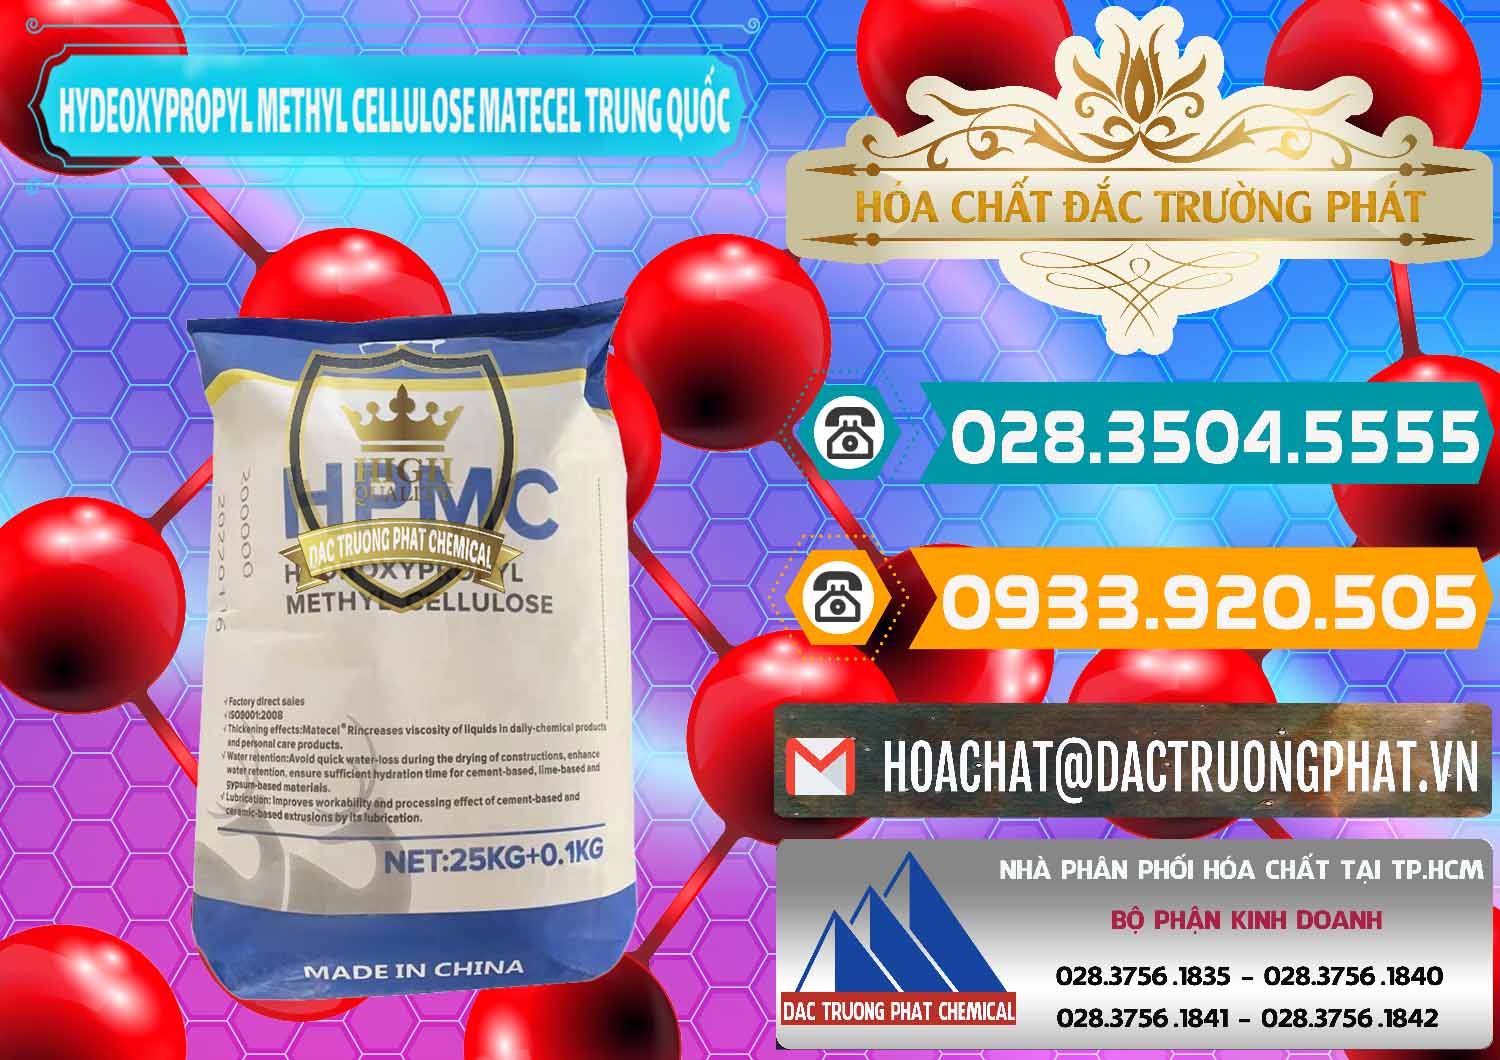 Đơn vị chuyên cung ứng và bán Chất Tạo Đặc HPMC - Hydroxypropyl Methyl Cellulose Matecel Trung Quốc China - 0396 - Cty chuyên bán ( cung cấp ) hóa chất tại TP.HCM - congtyhoachat.vn